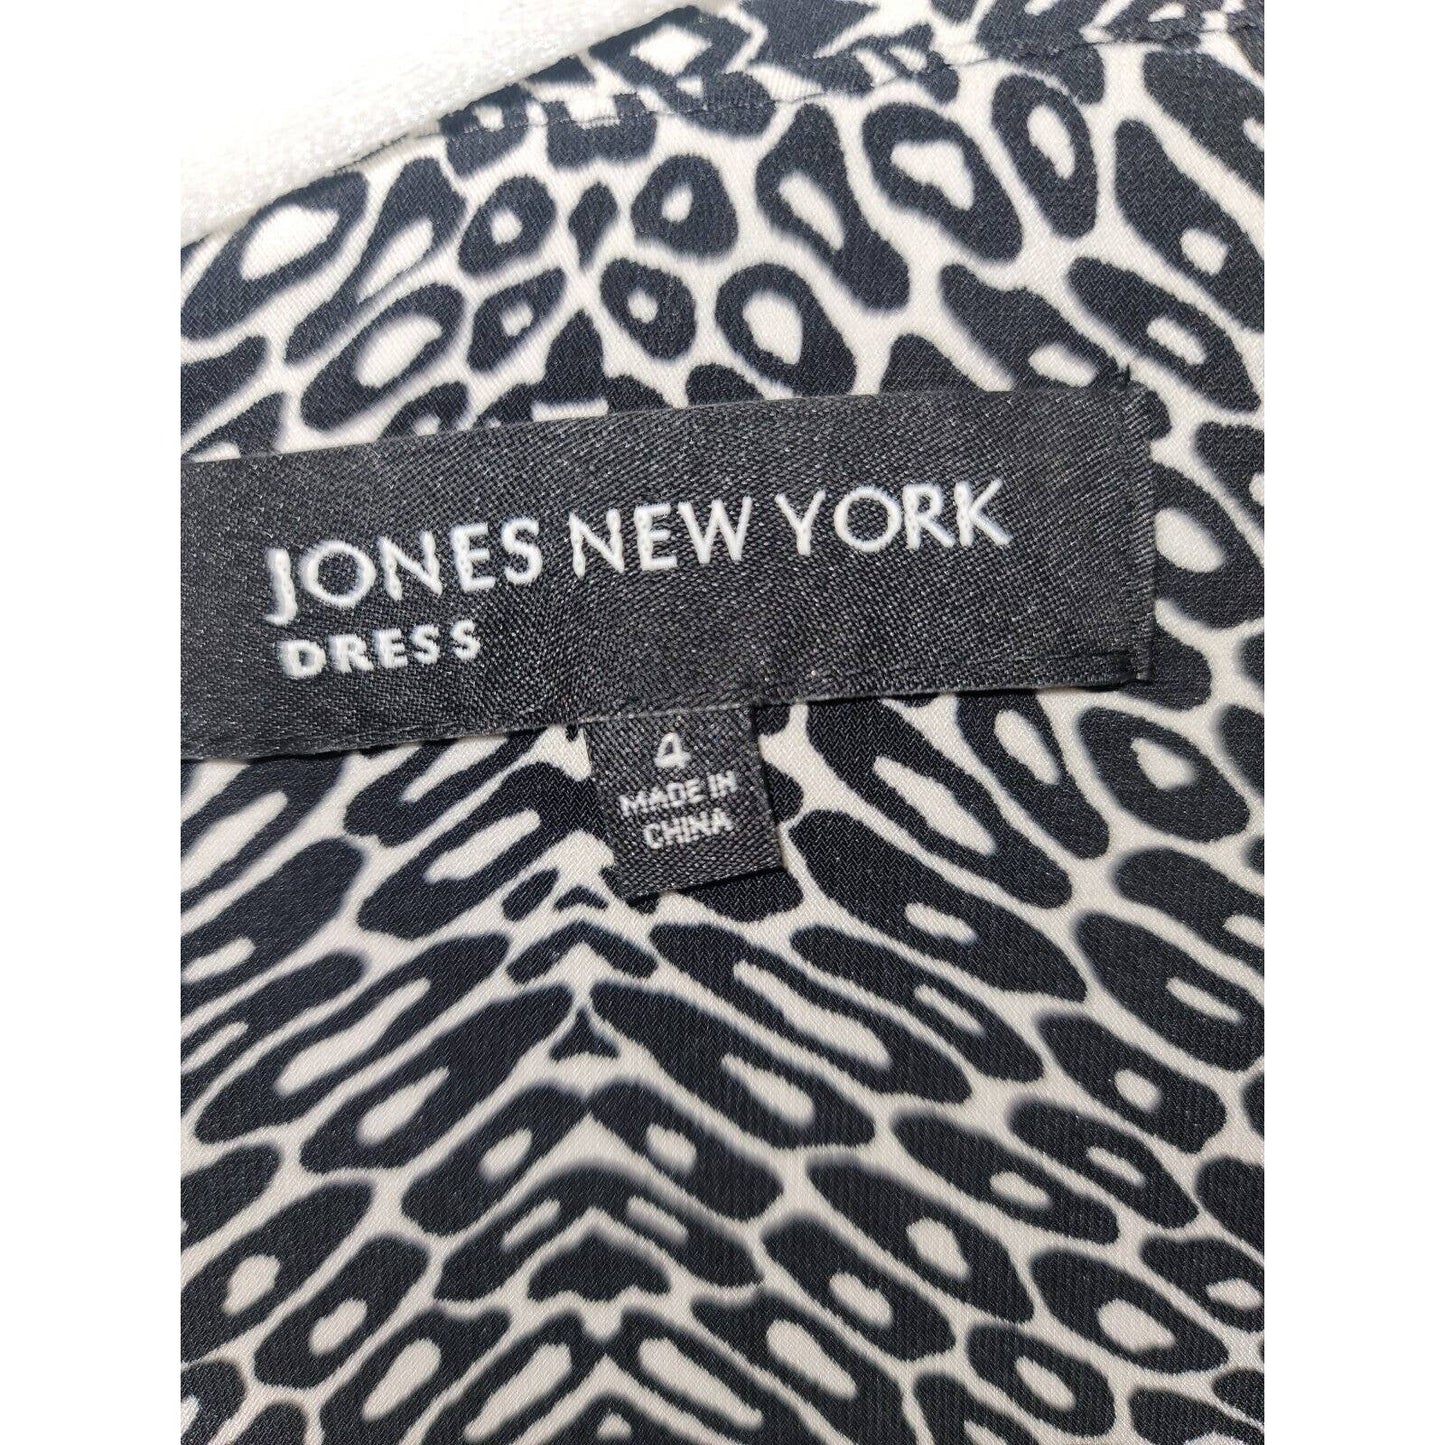 Jones New York White & Black Polyester Collared Half Sleeve Knee Length Dress 4